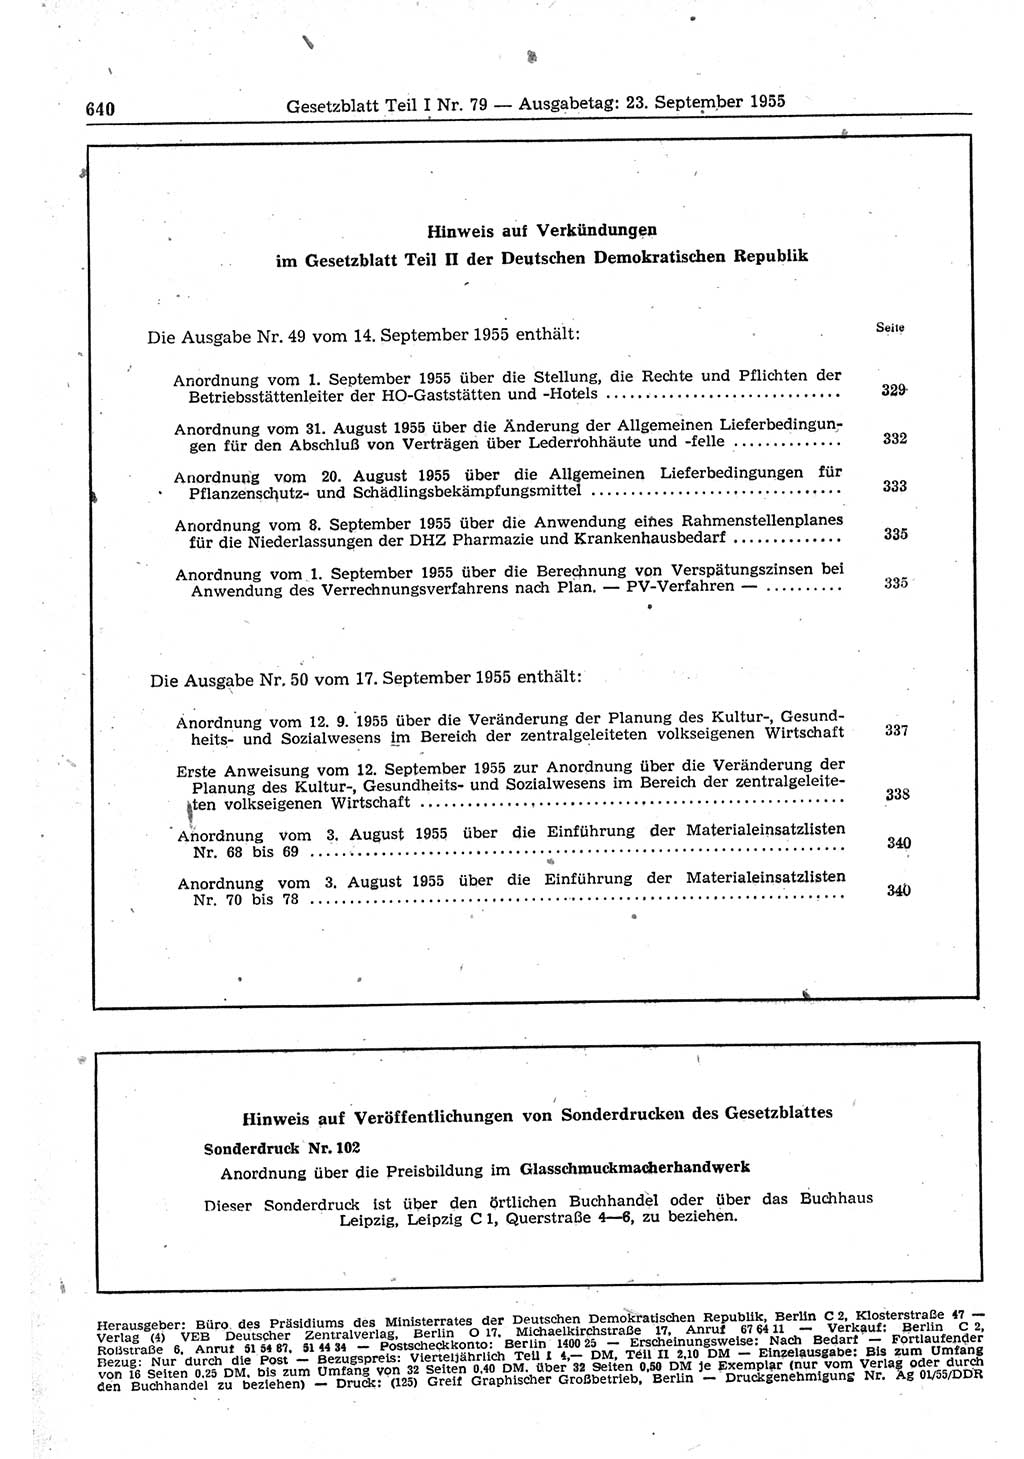 Gesetzblatt (GBl.) der Deutschen Demokratischen Republik (DDR) Teil Ⅰ 1955, Seite 640 (GBl. DDR Ⅰ 1955, S. 640)